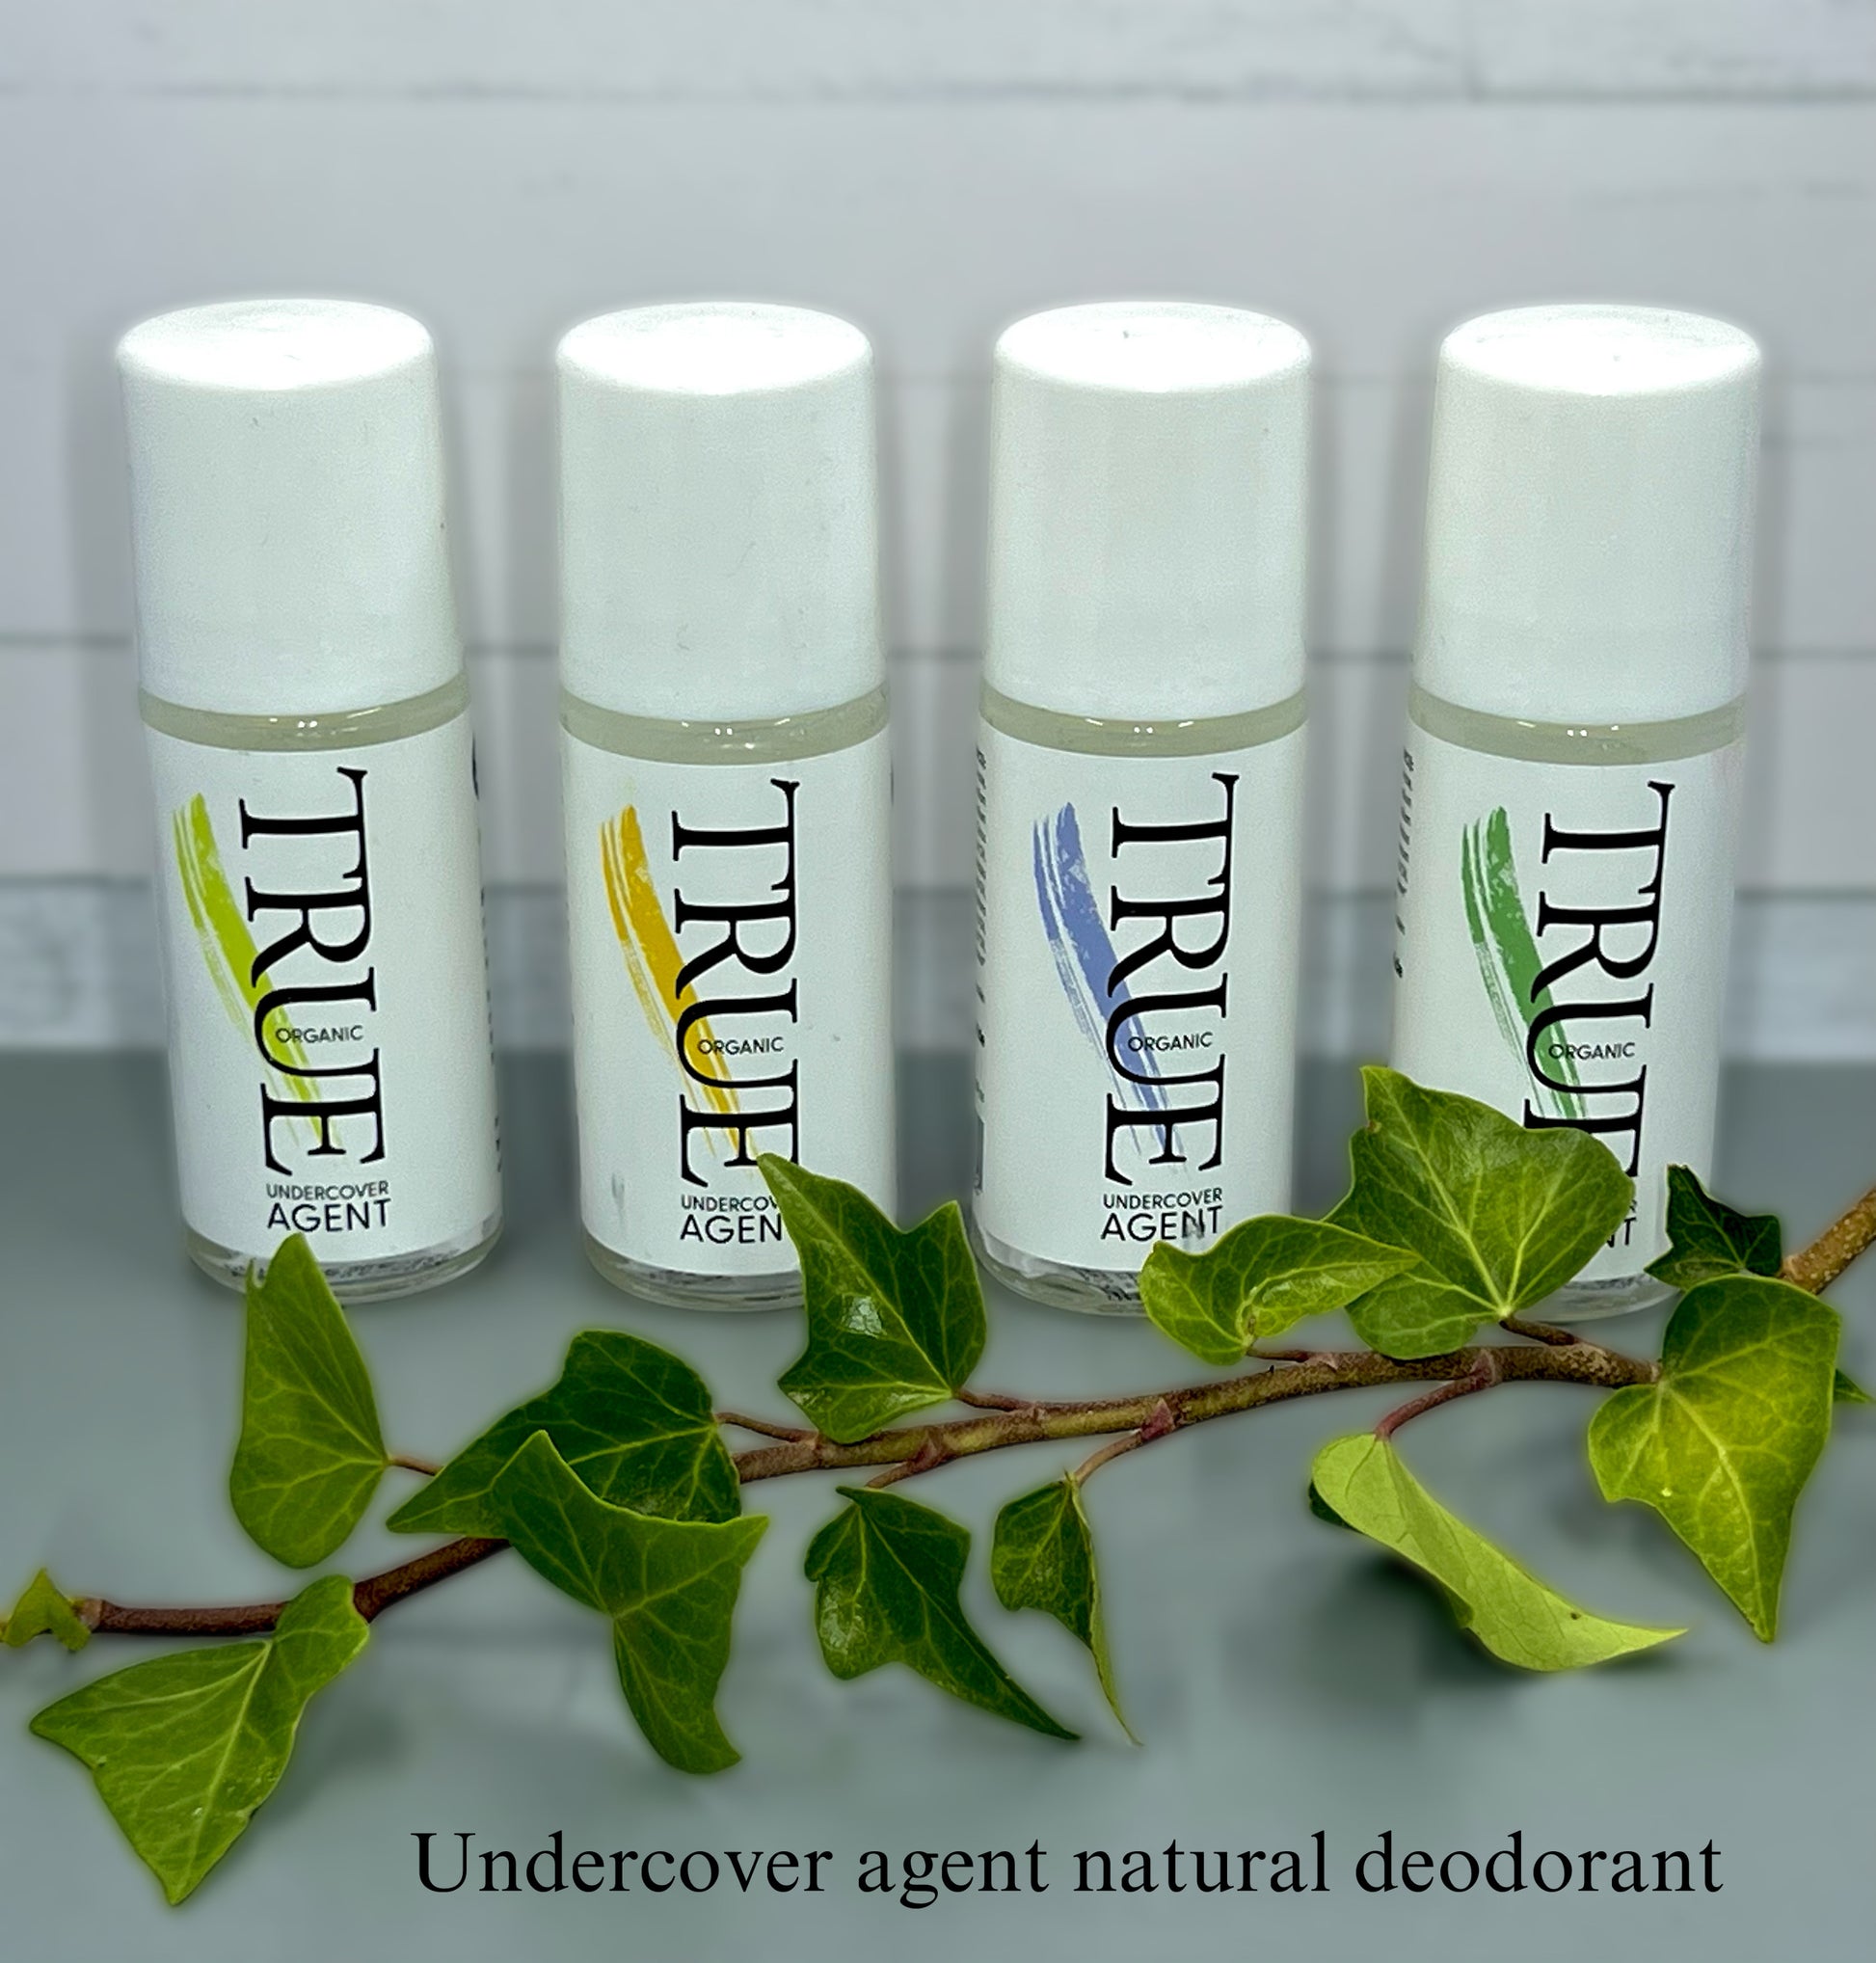 Undercover agent natural deodorant 